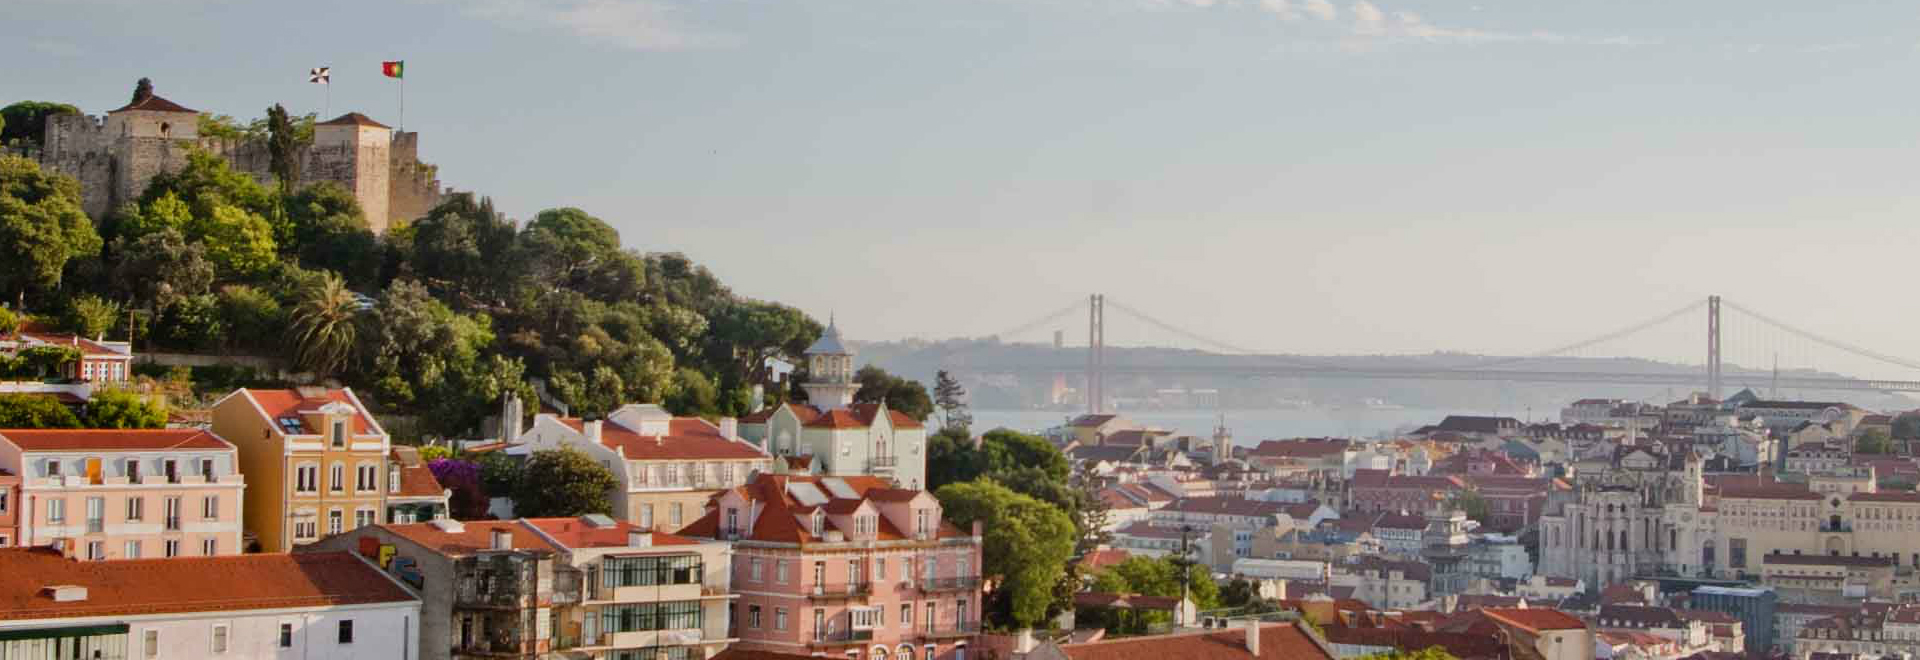 My Lisboa | Tara Vuelta